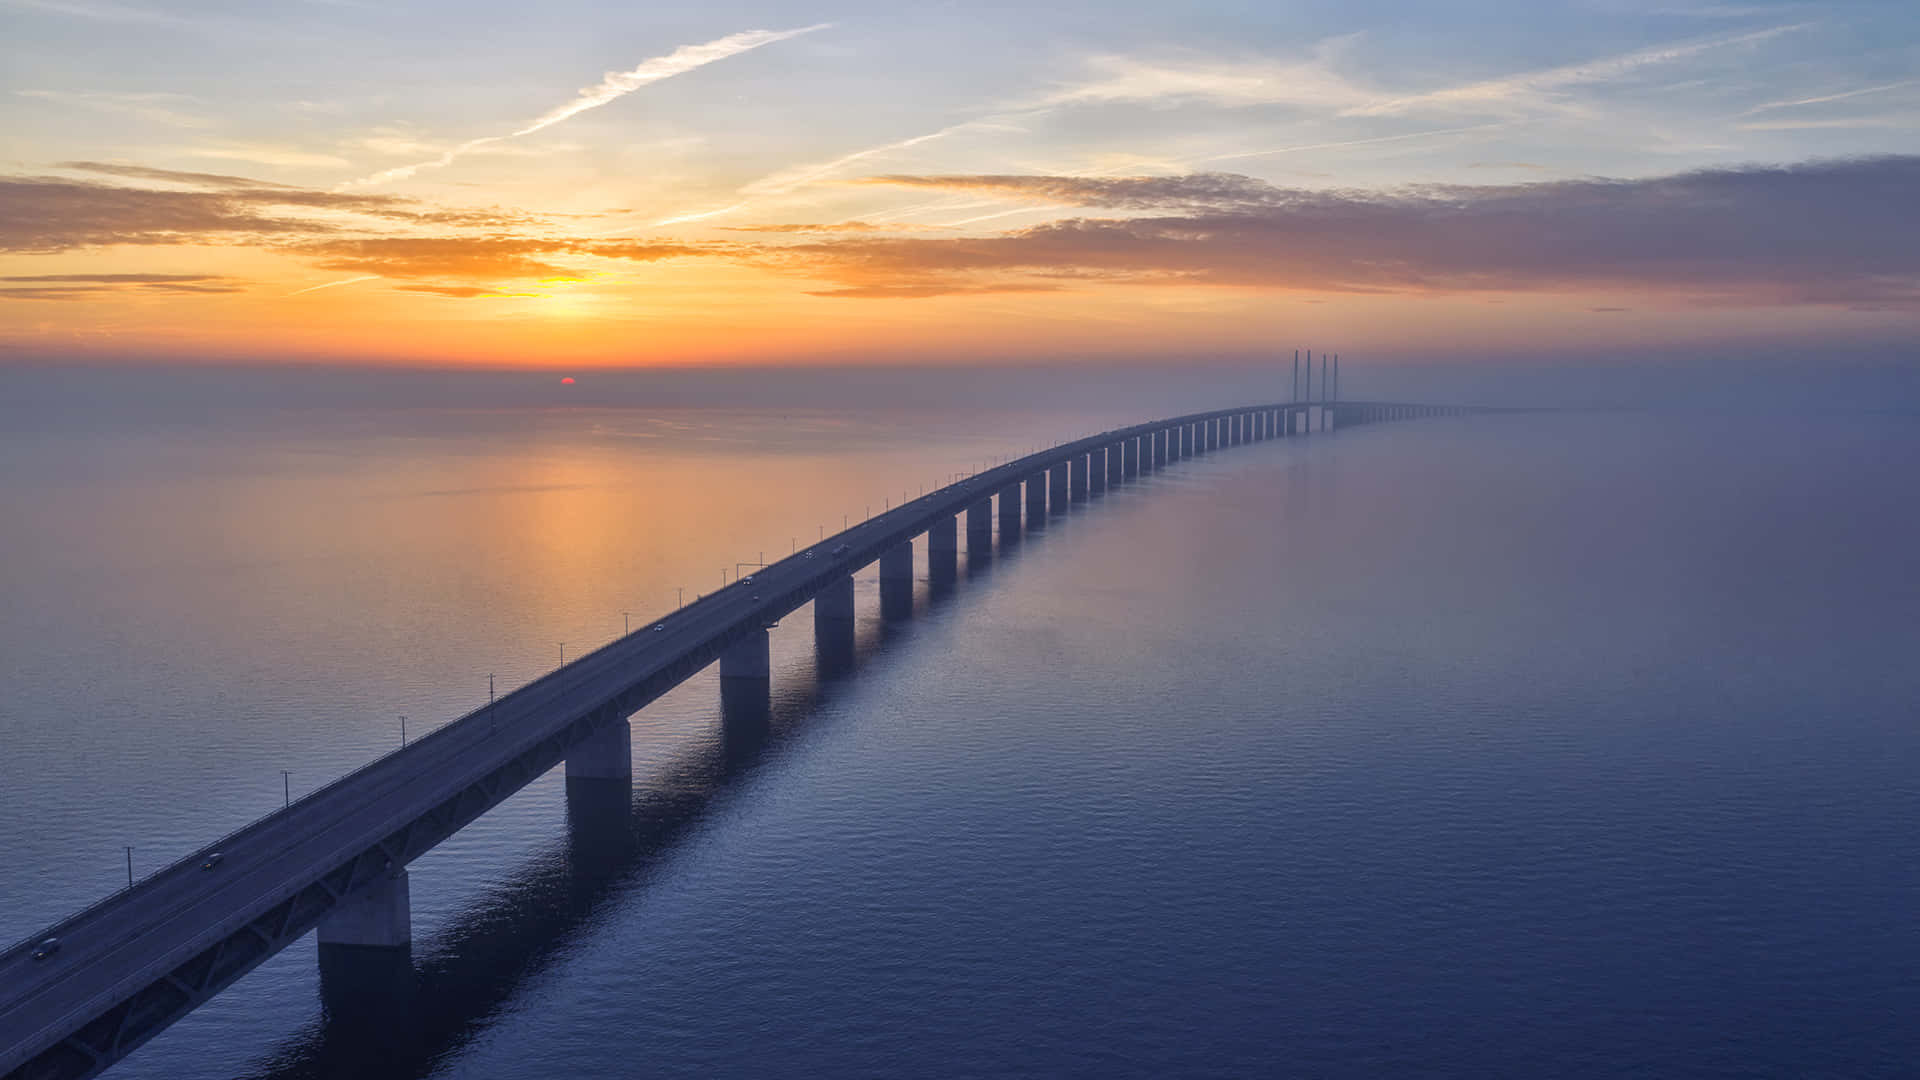 Oresund Bridge Scenic Sunset View Wallpaper